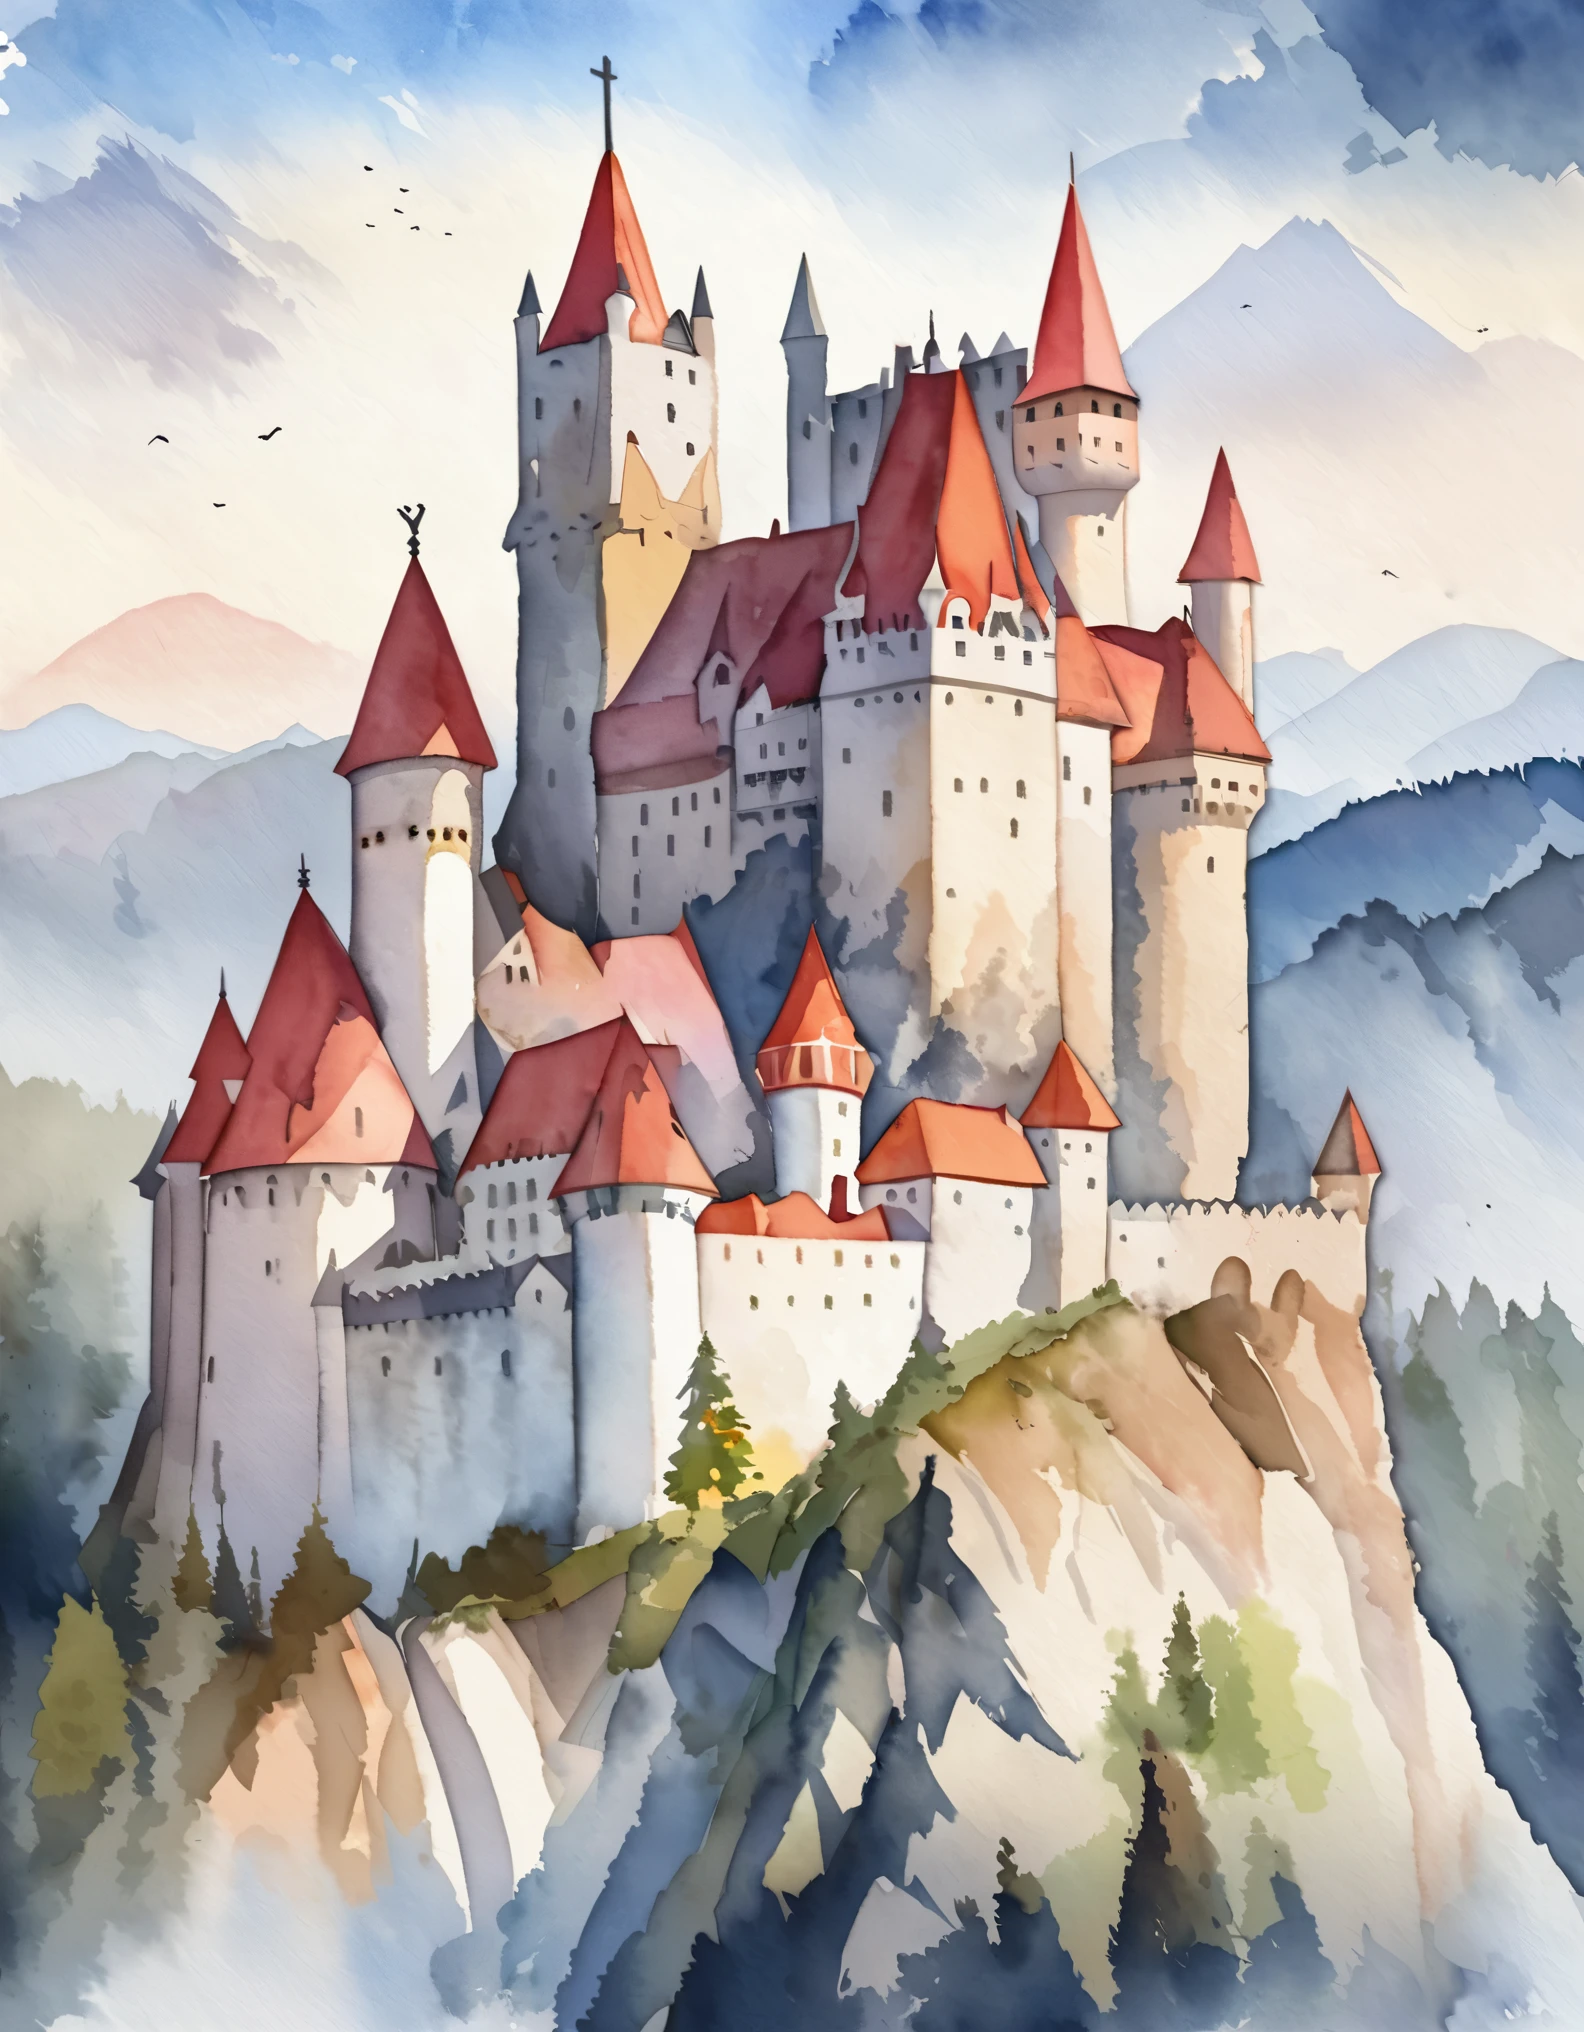 Castelo de Bran, Castelo romeno, Castelo do Drácula, lendas e mistérios, Topo da montanha, aquarela:1.2, caprichoso e delicado, Como uma ilustração em uma criança&#39;livro, escovação suave, Dim, As cores claras criam uma aparência fantástica.